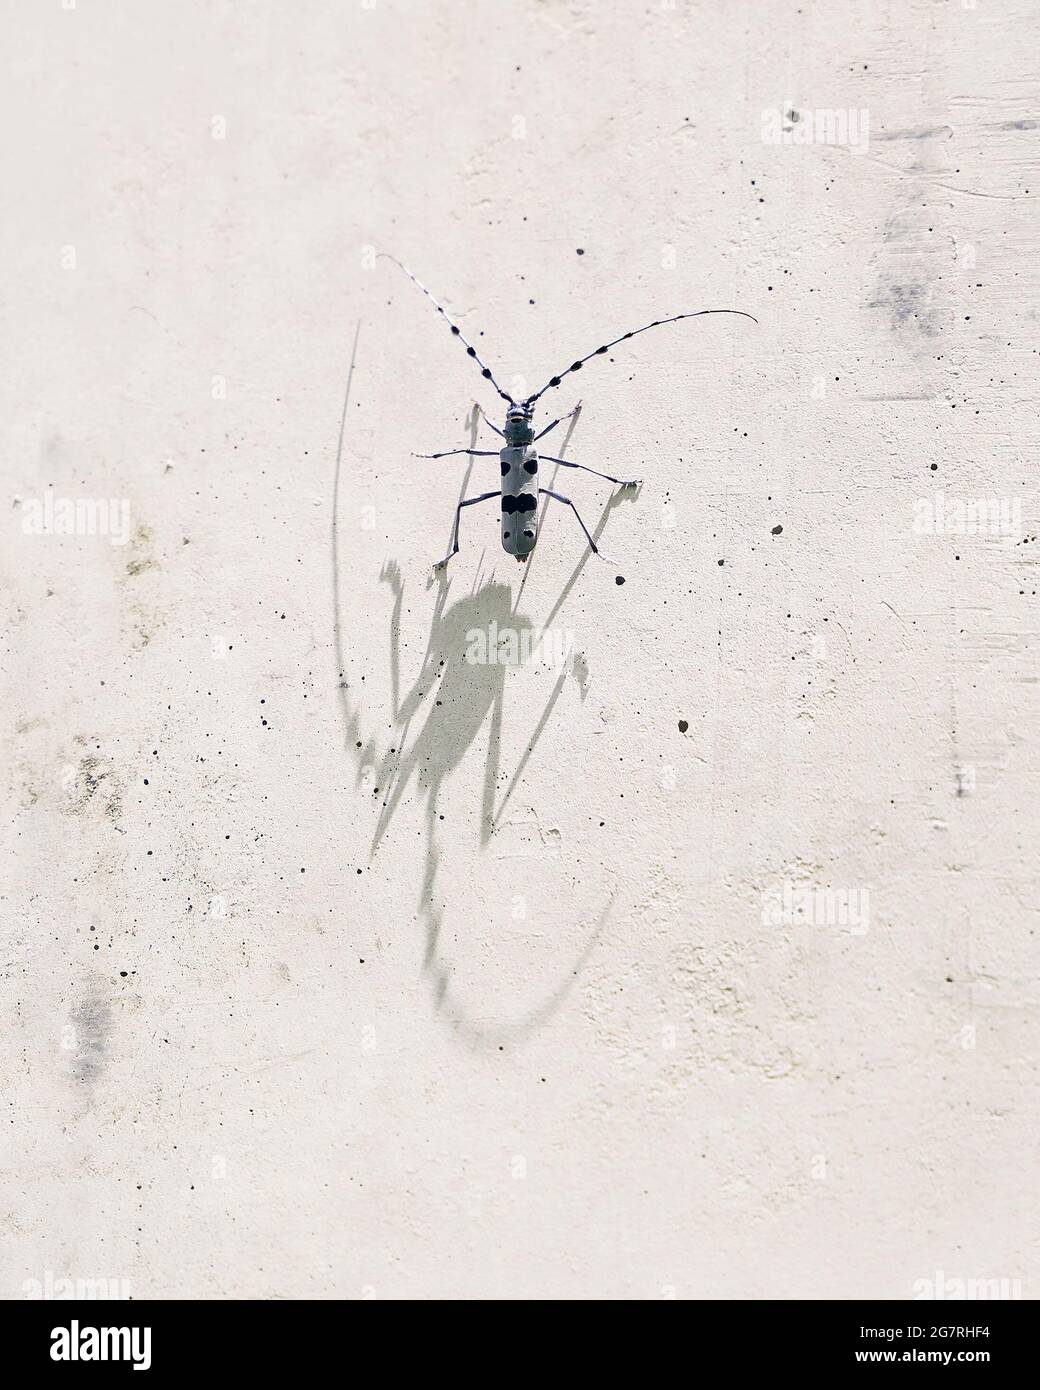 Escarabajo del longicornio de Rosalia lanzando una sombra del monstruo con sus antenas impresionantes del insecto Foto de stock